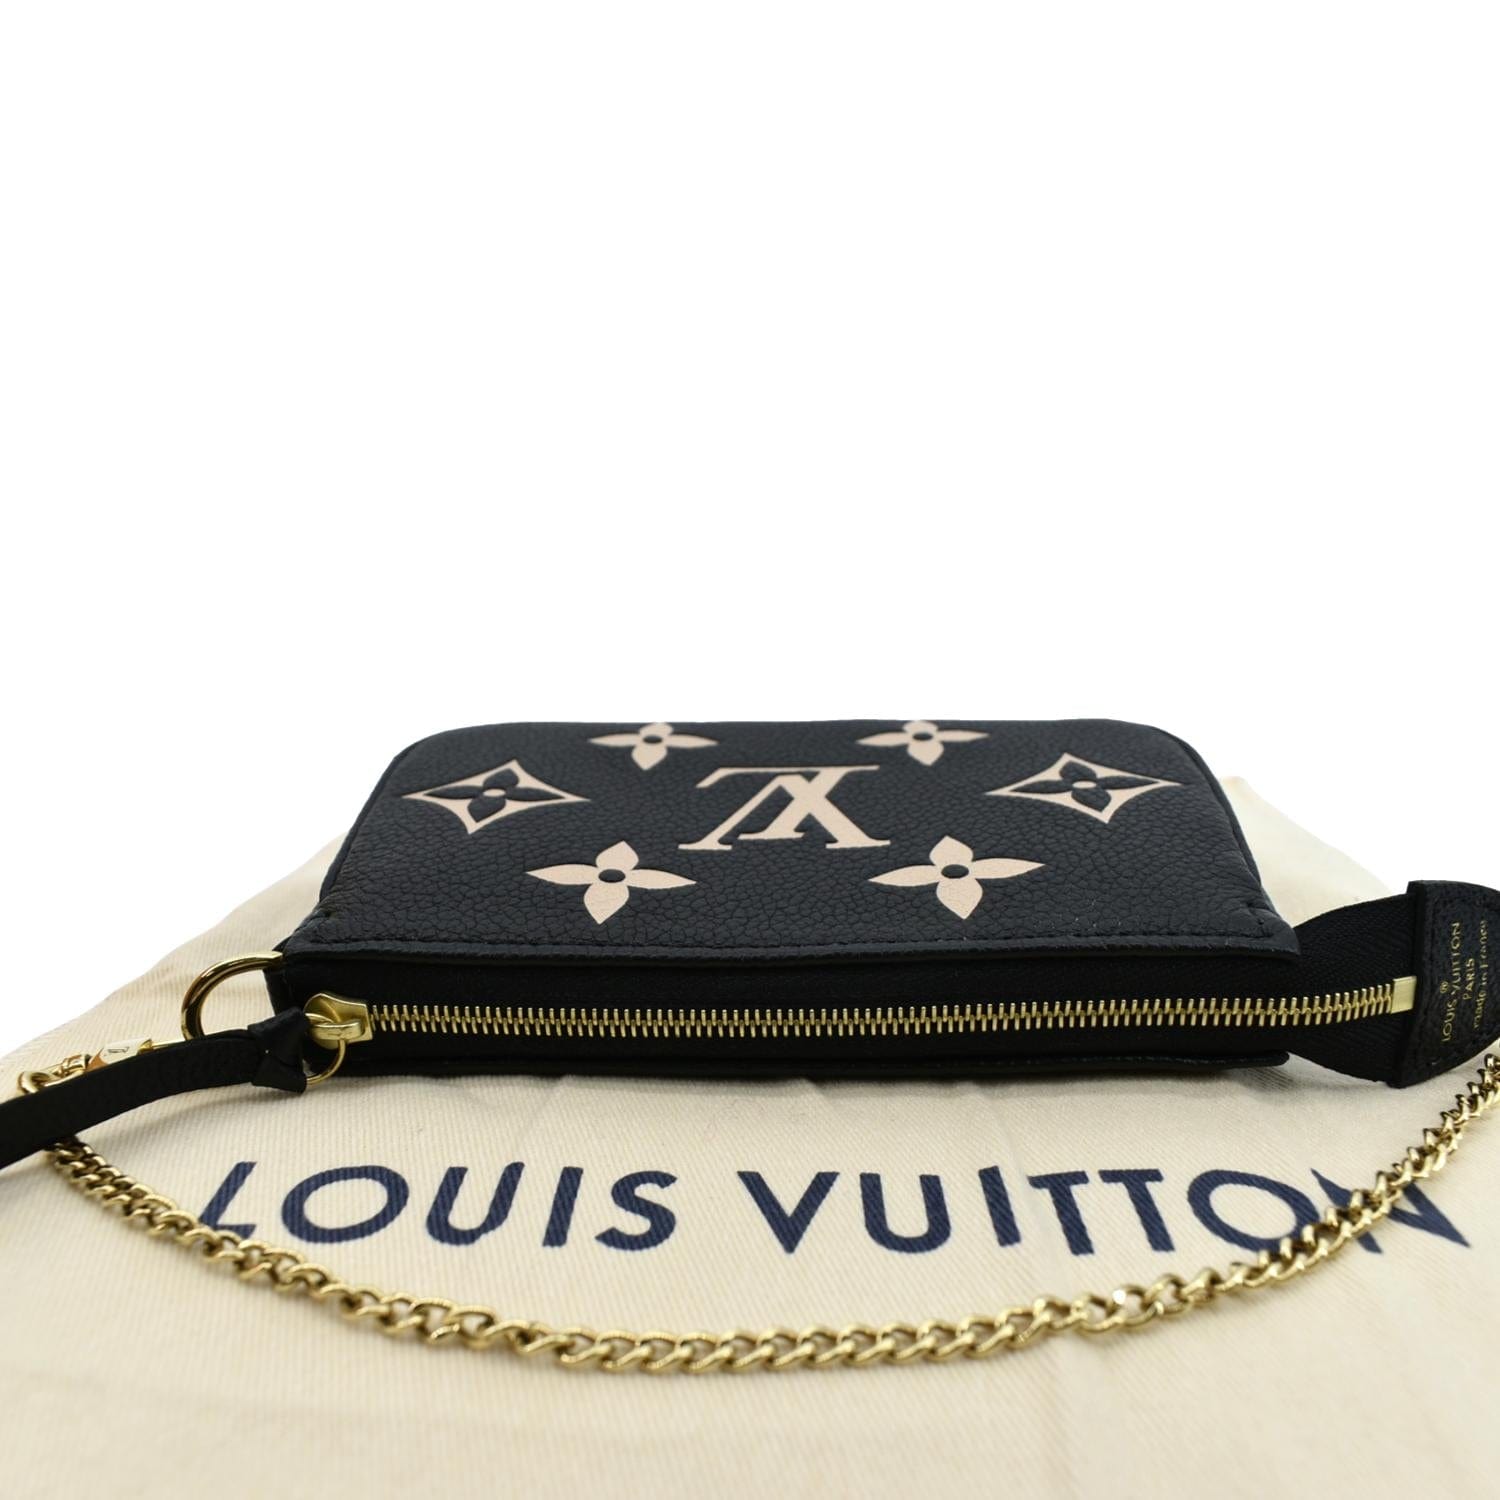 Louis Vuitton Small Zippy Coin Purse in Bicolour Giant Monogram